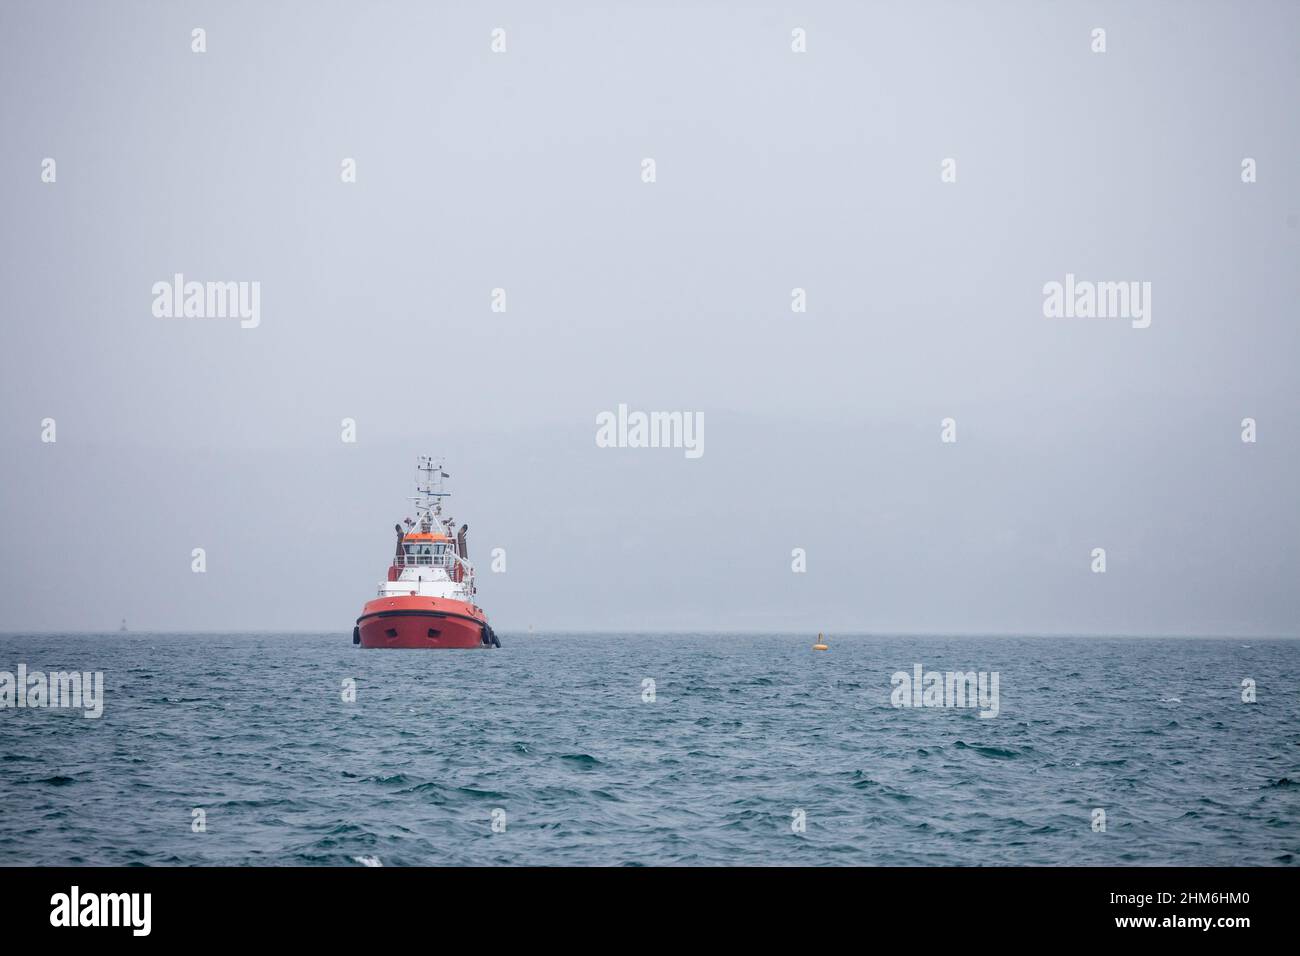 Photo d'un remorqueur devant une tempête de smog et de brouillard, sur la mer. Un remorqueur ou remorqueur est un navire marin qui manœuvre d'autres navires par poussin Banque D'Images